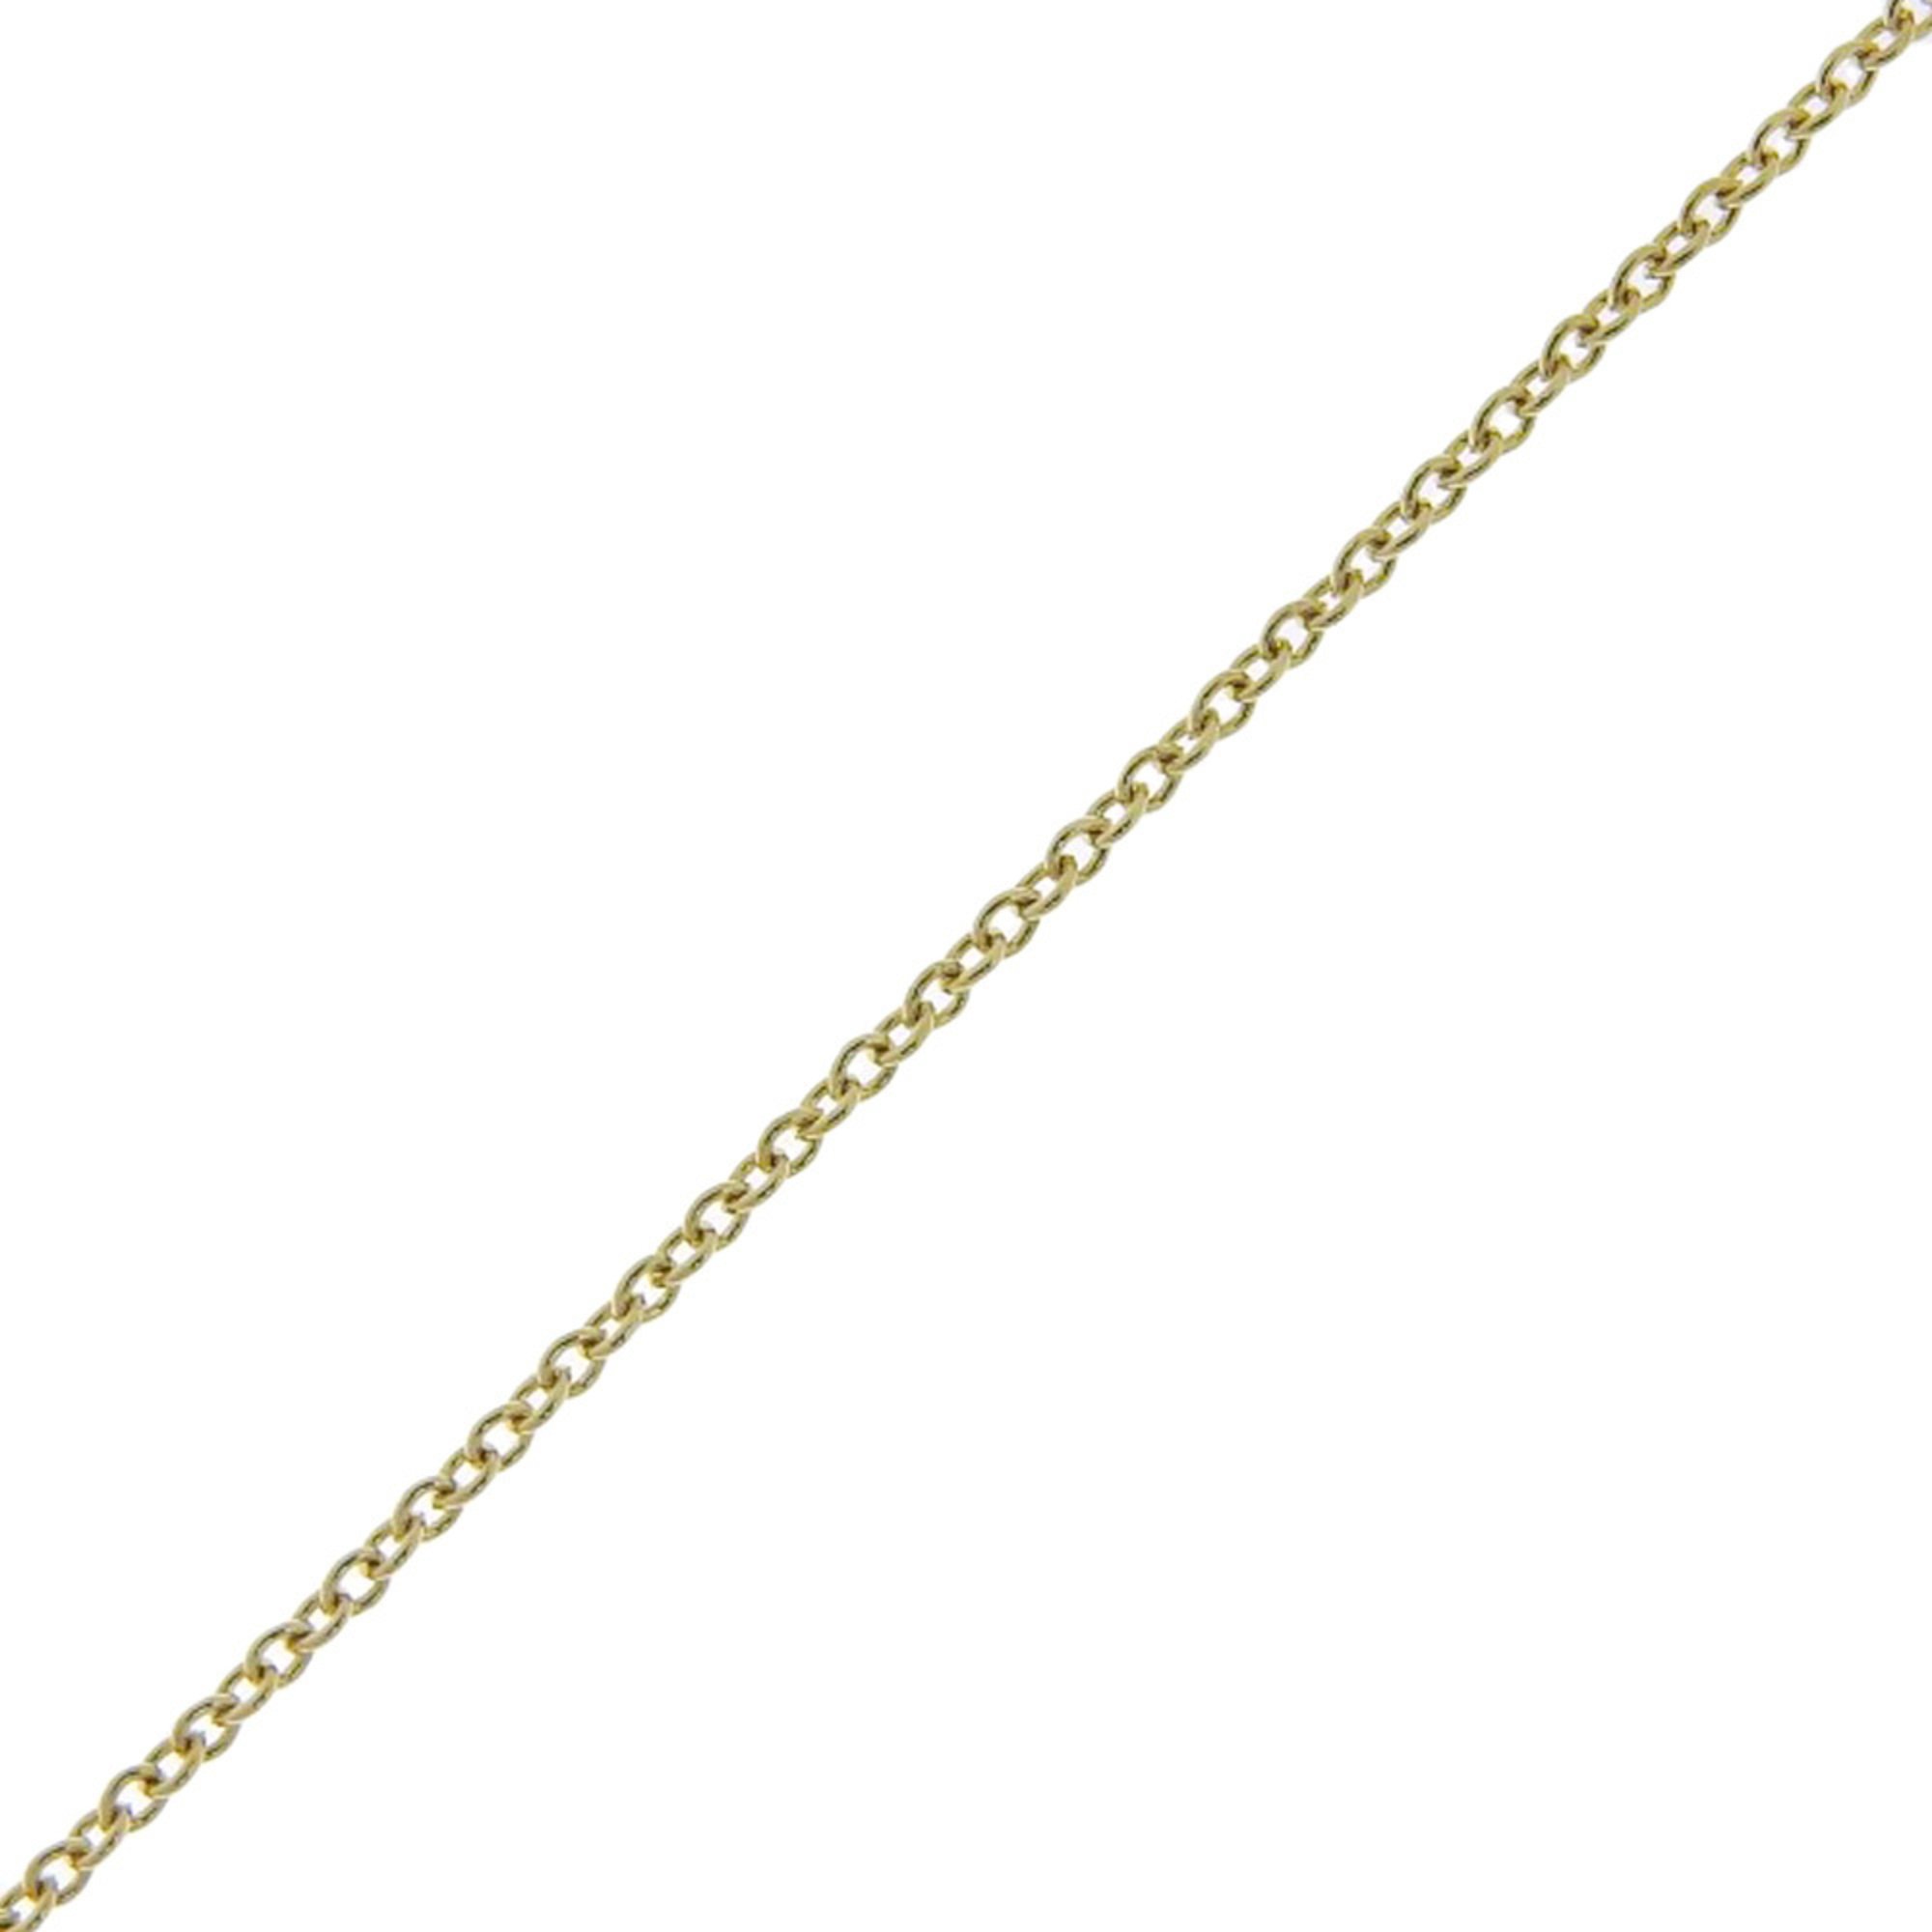 Tiffany TIFFANY&Co. Ribbon Necklace K18 Yellow Gold Approx. 4.1g ribbon Women's I220823095